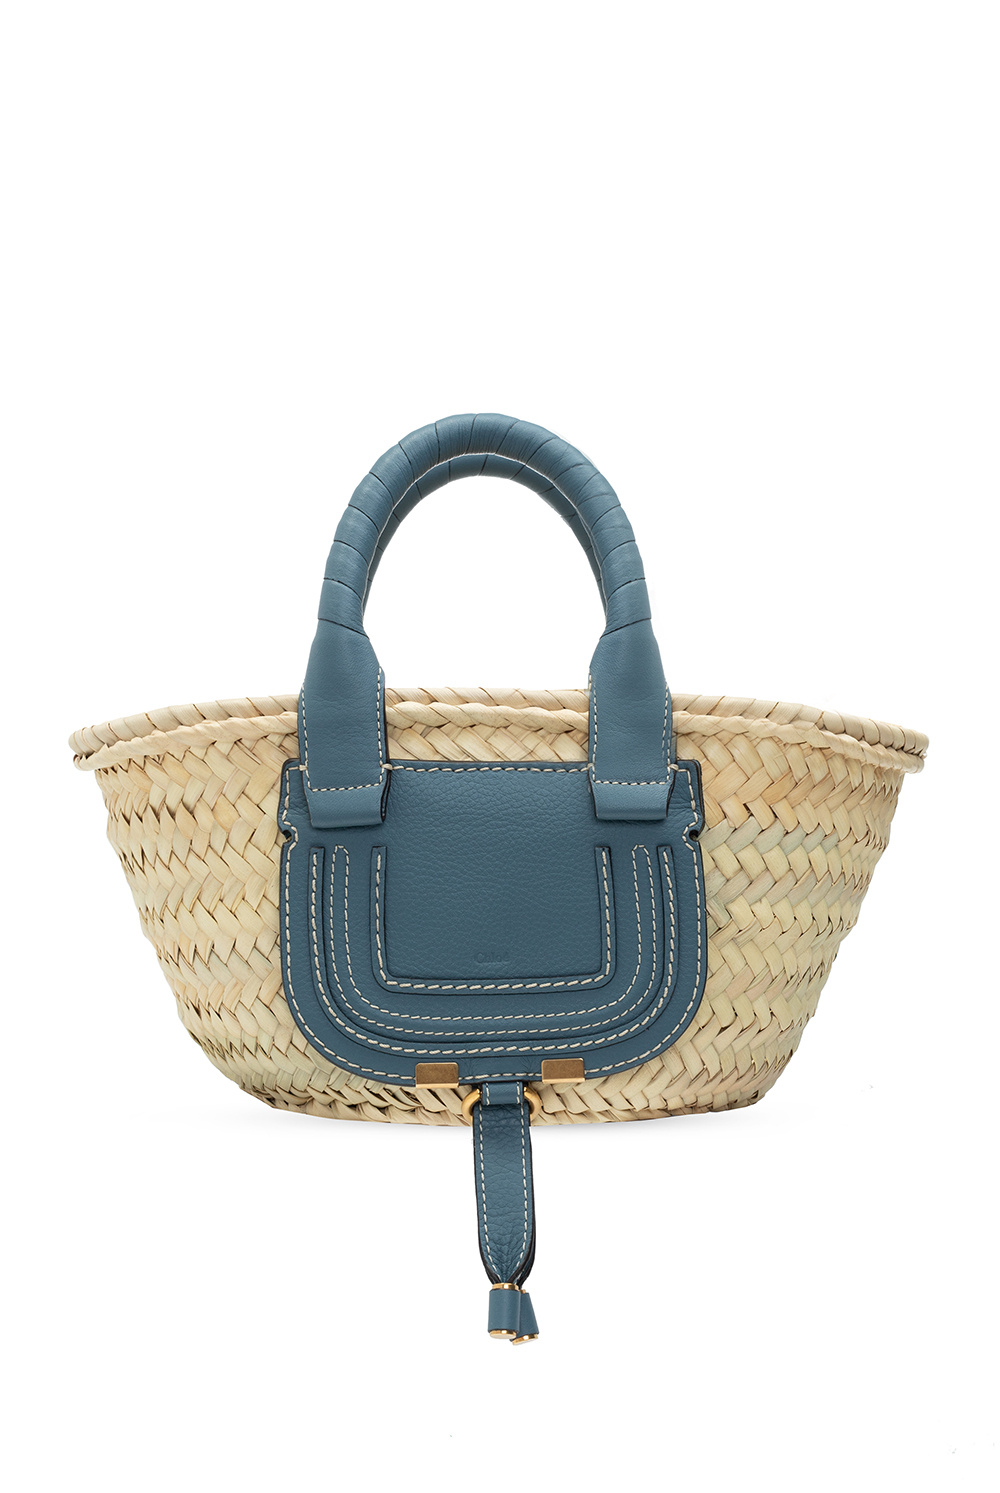 Chloé ‘Marcie' hand bag